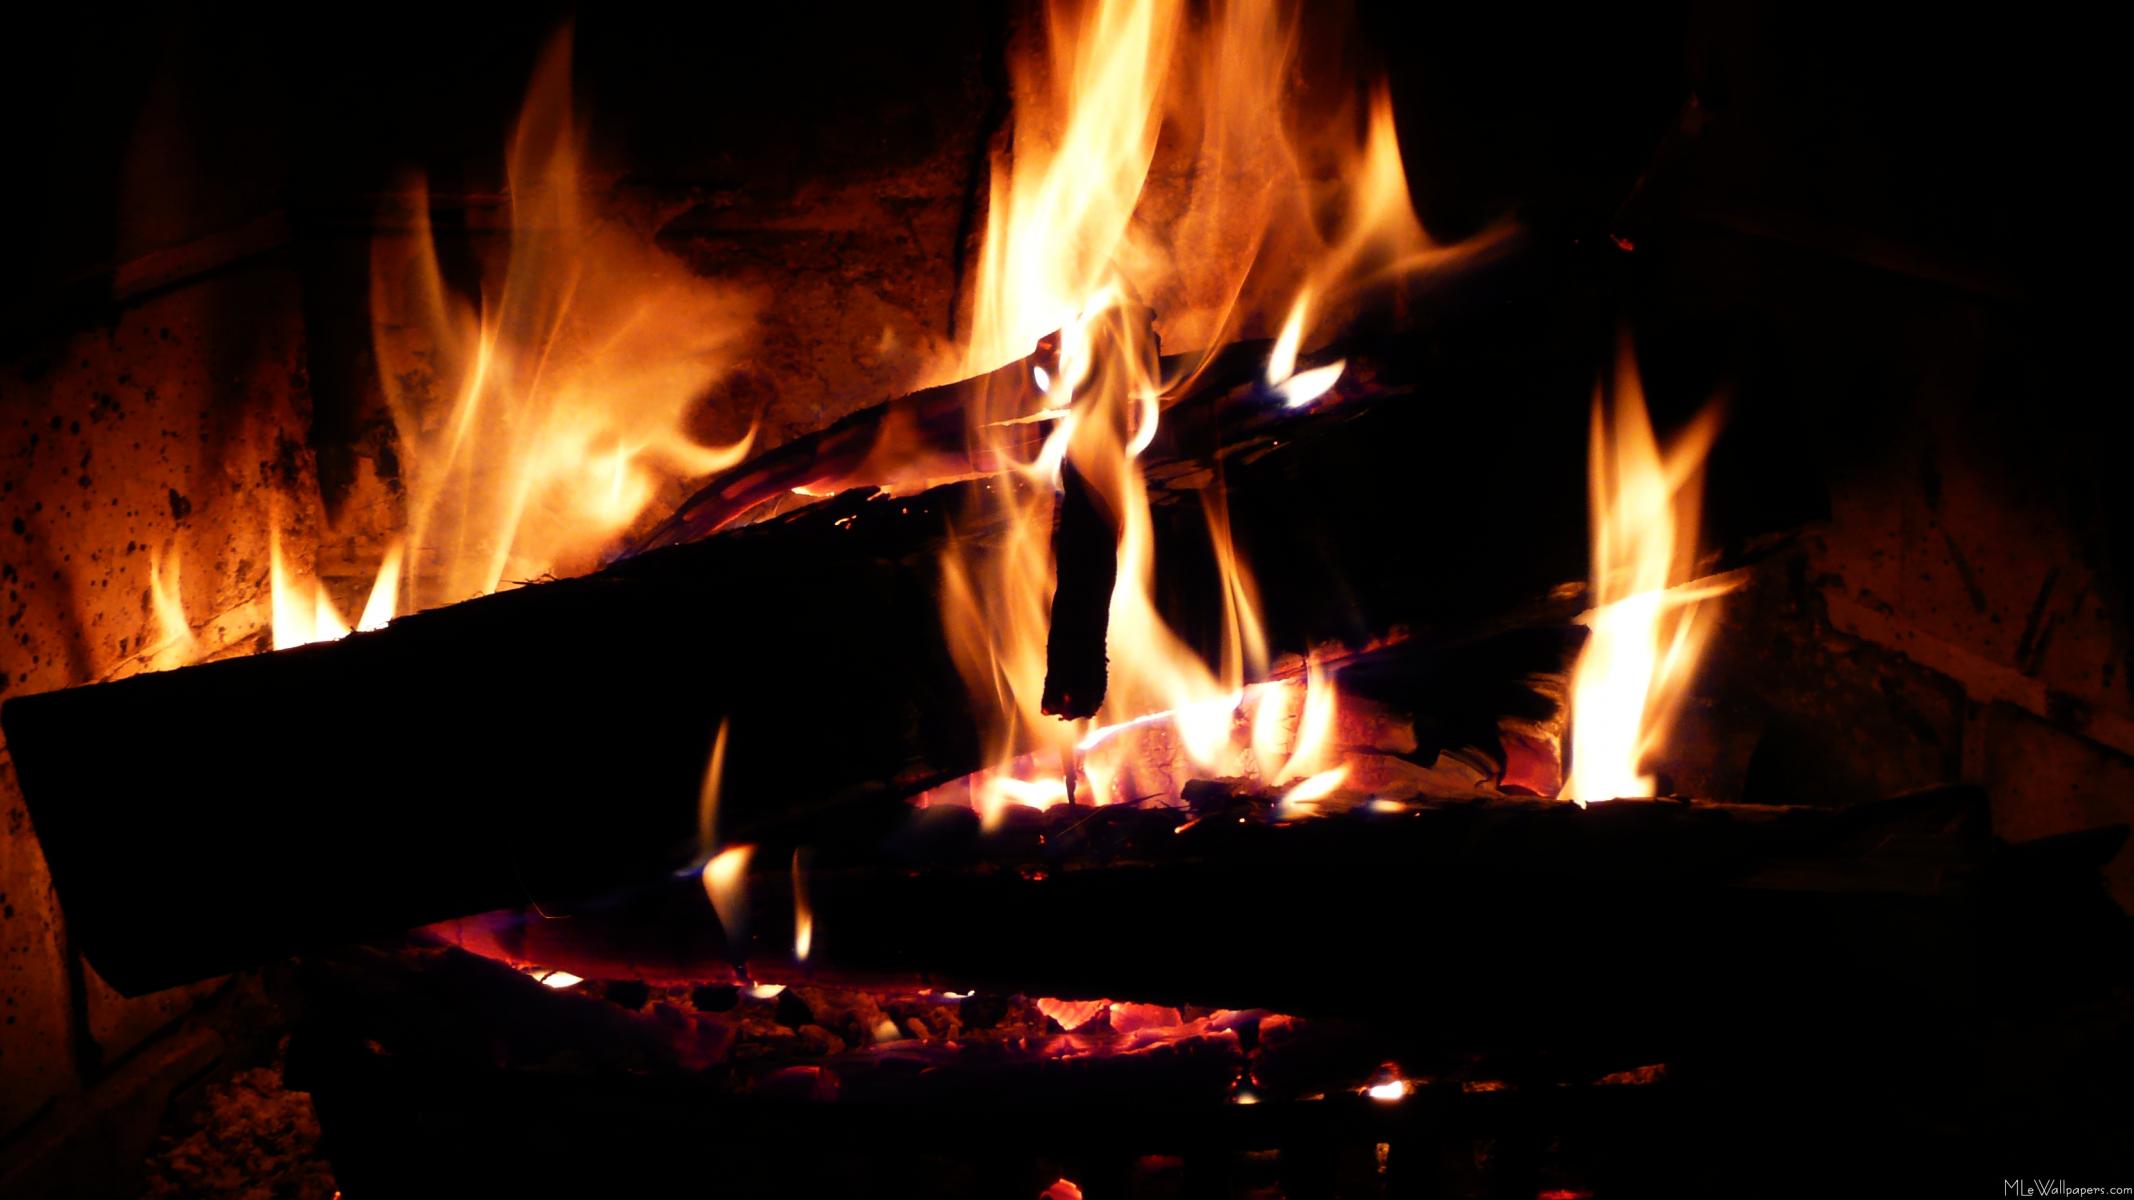 Logs in the fireplace là một trong những hình ảnh gỗ đốt trong lò sưởi đẹp nhất mà bạn sẽ từng thấy. Nếu như bạn muốn tìm kiếm một bức ảnh đẹp về lò sưởi, hãy đến với chúng tôi và bạn sẽ không thất vọng. 